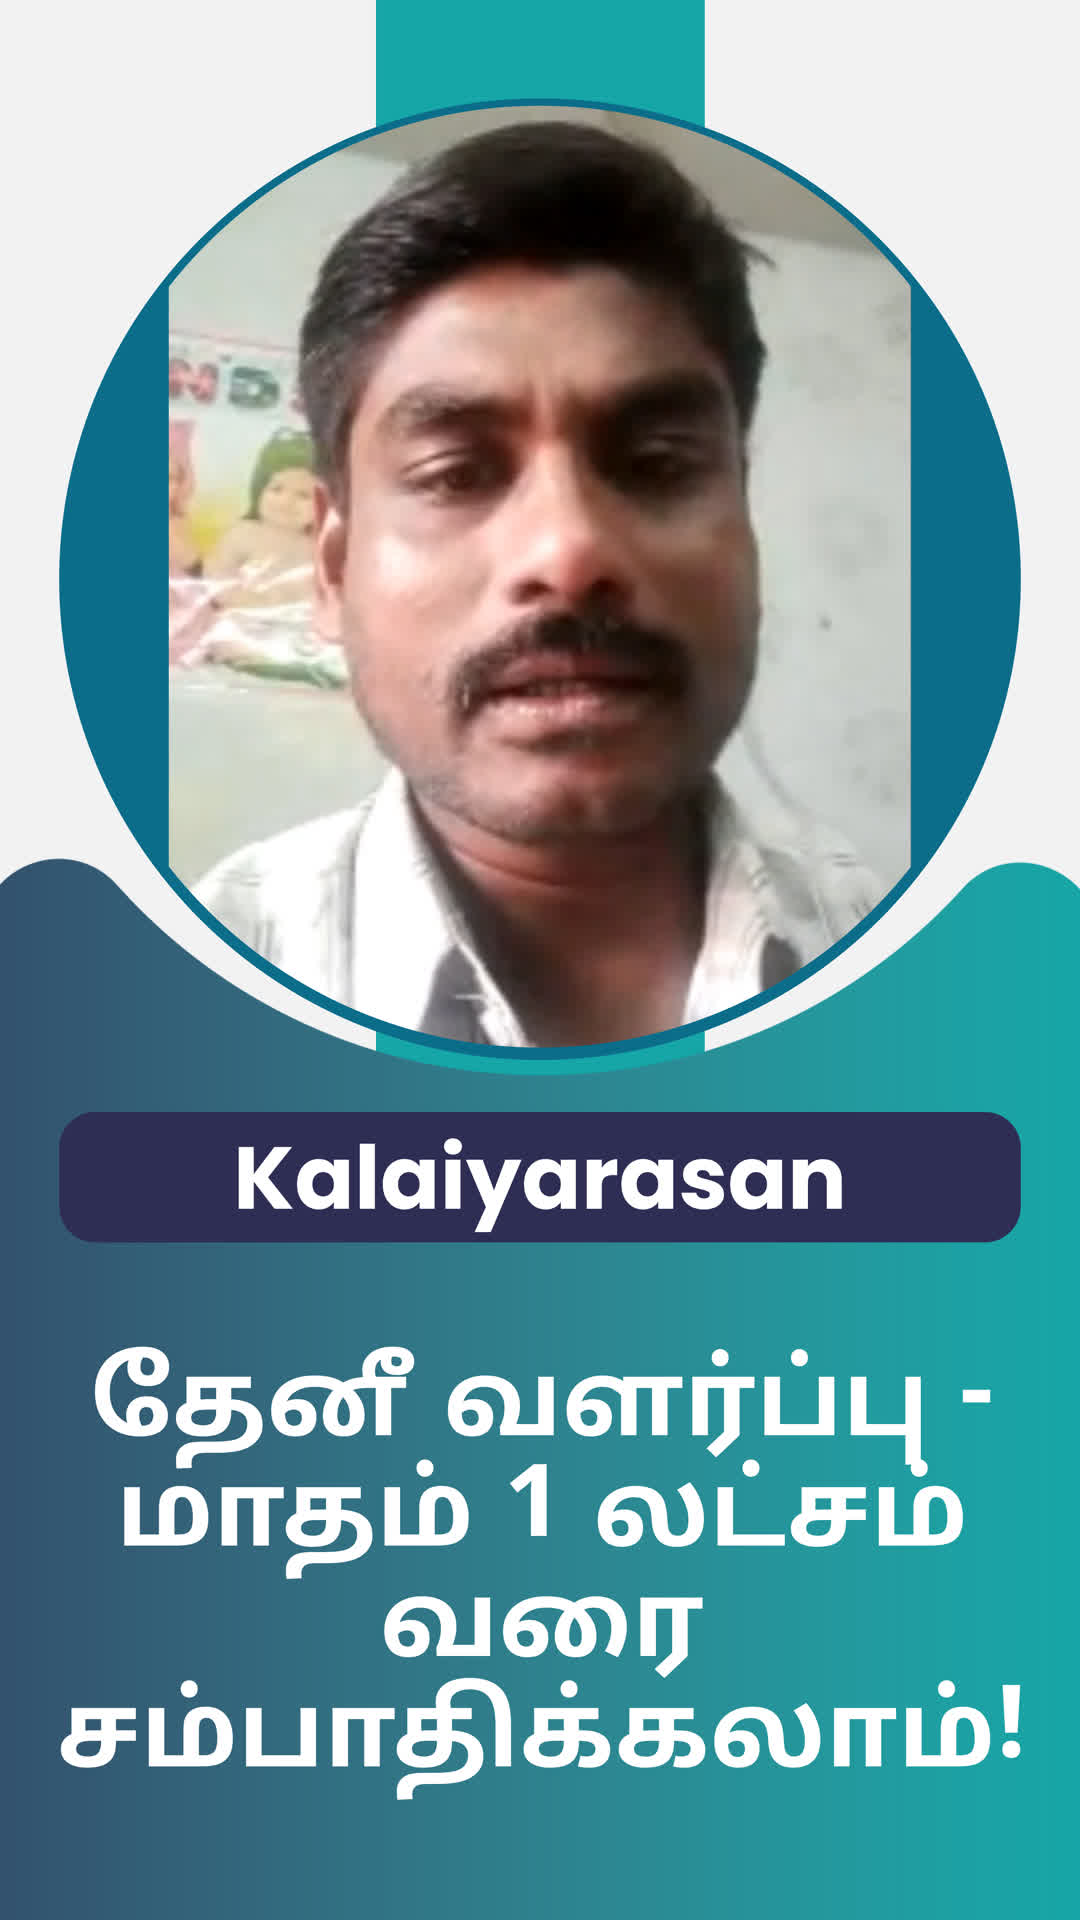 Kalaiyarasan's Honest Review of ffreedom app - Ariyalur ,Tamil Nadu